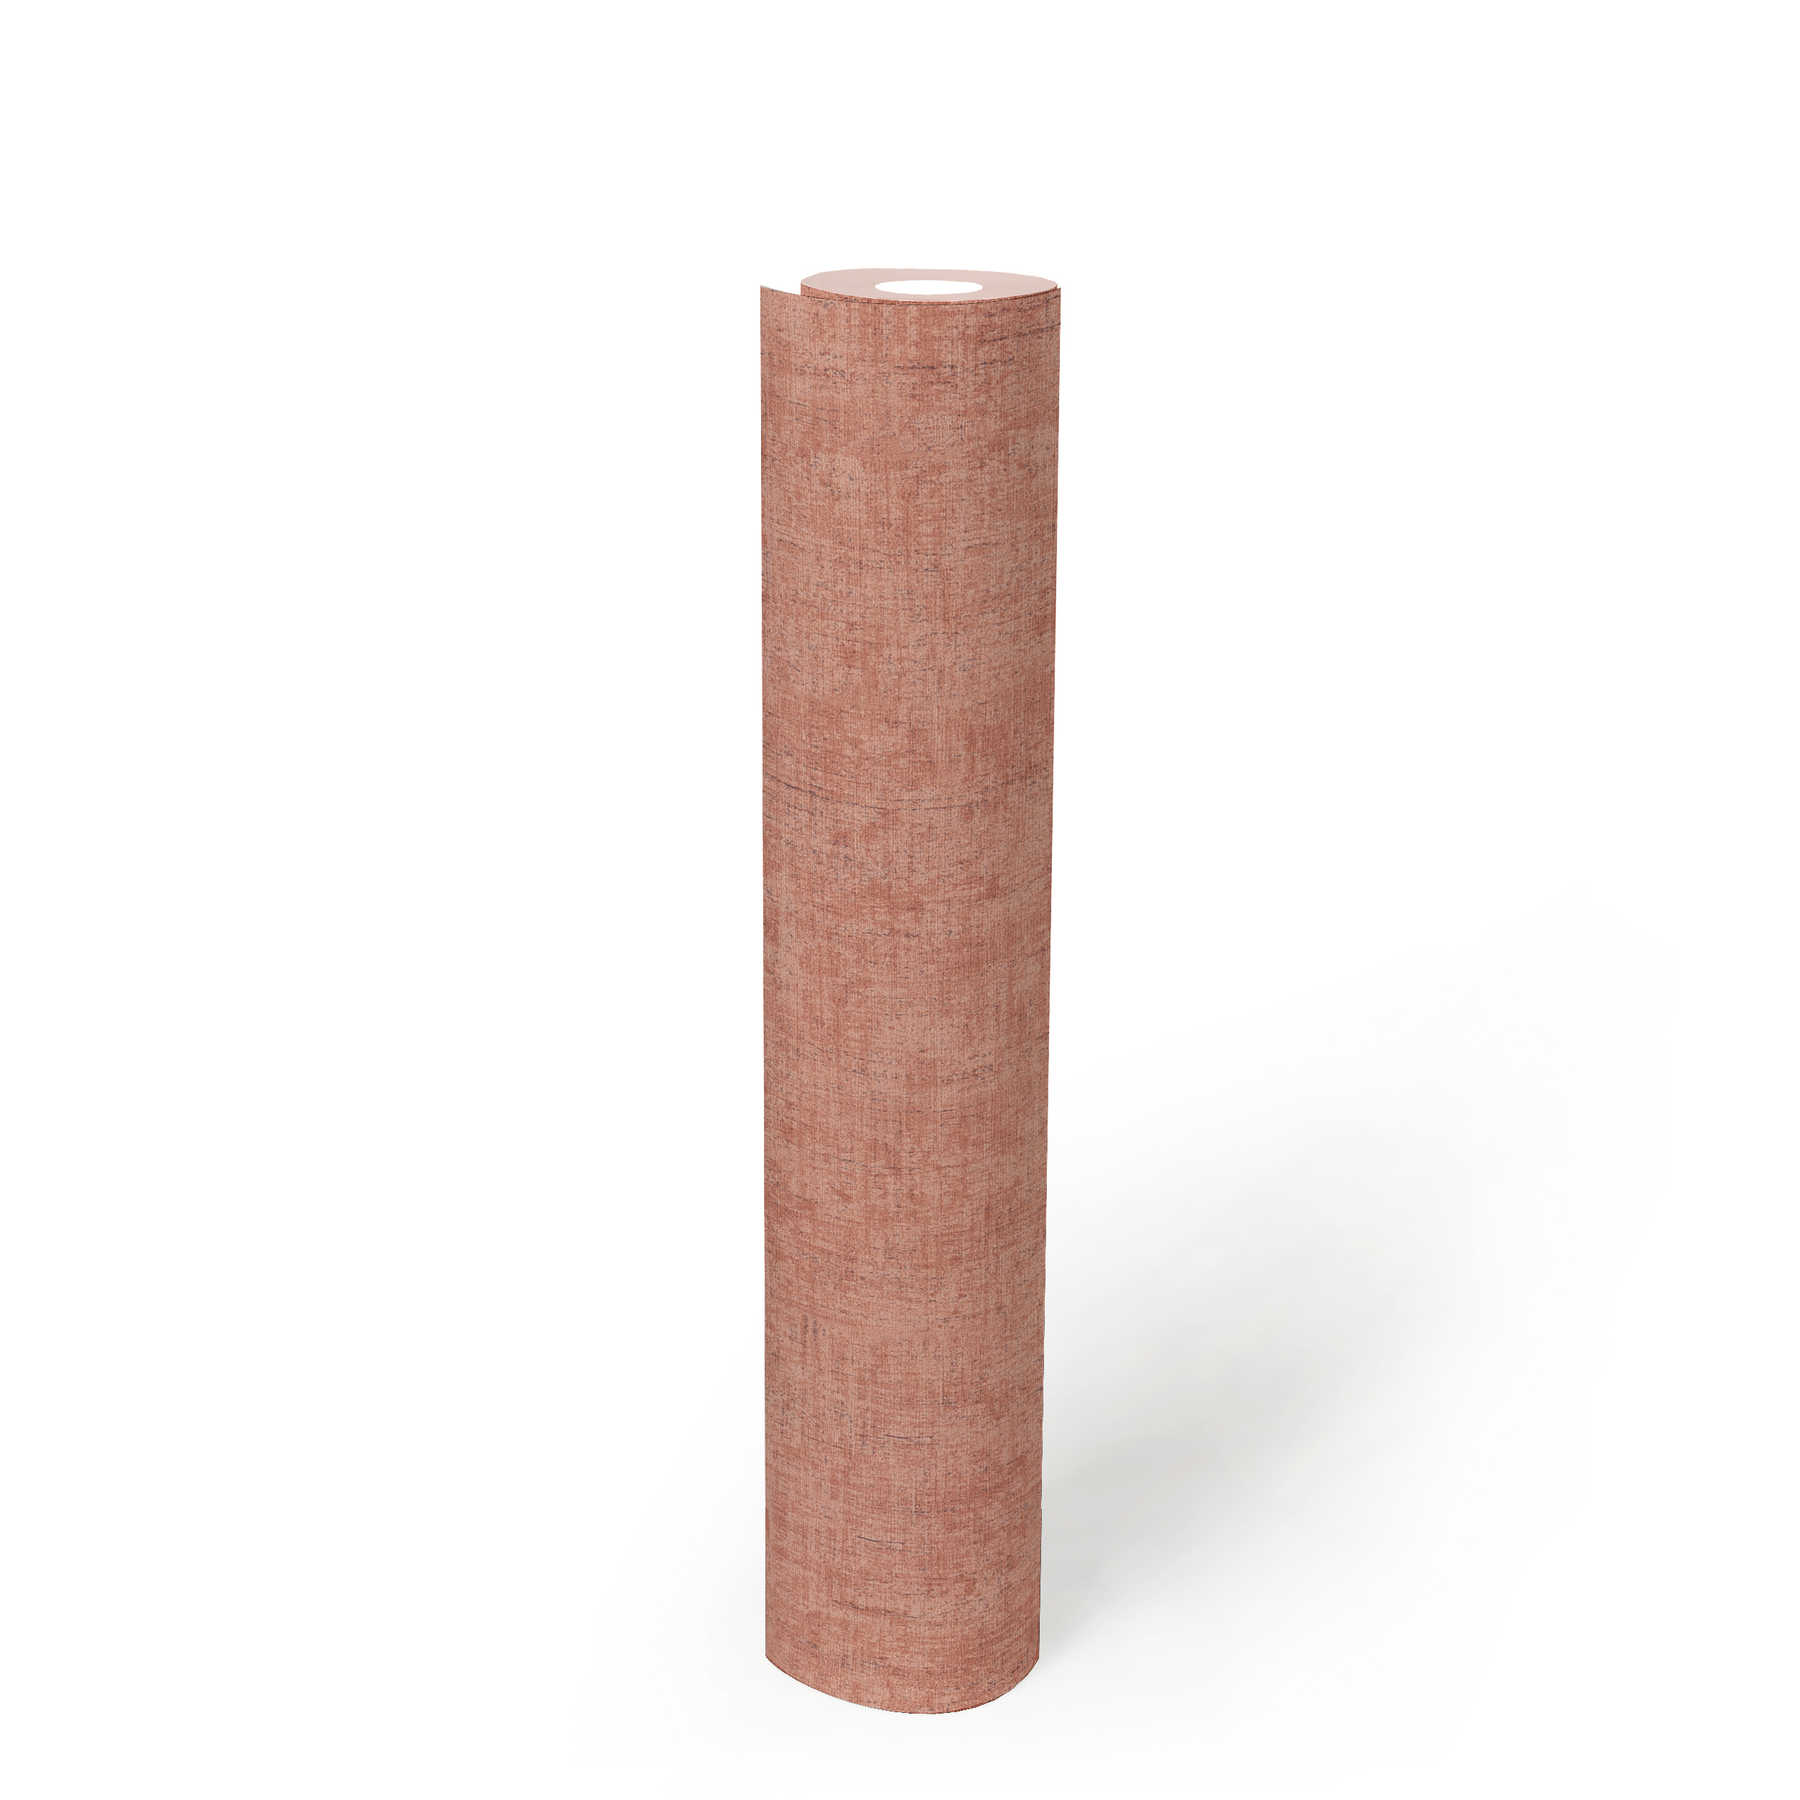             Papier peint intissé rose gris chiné avec hachures de couleur & structure gaufrée
        